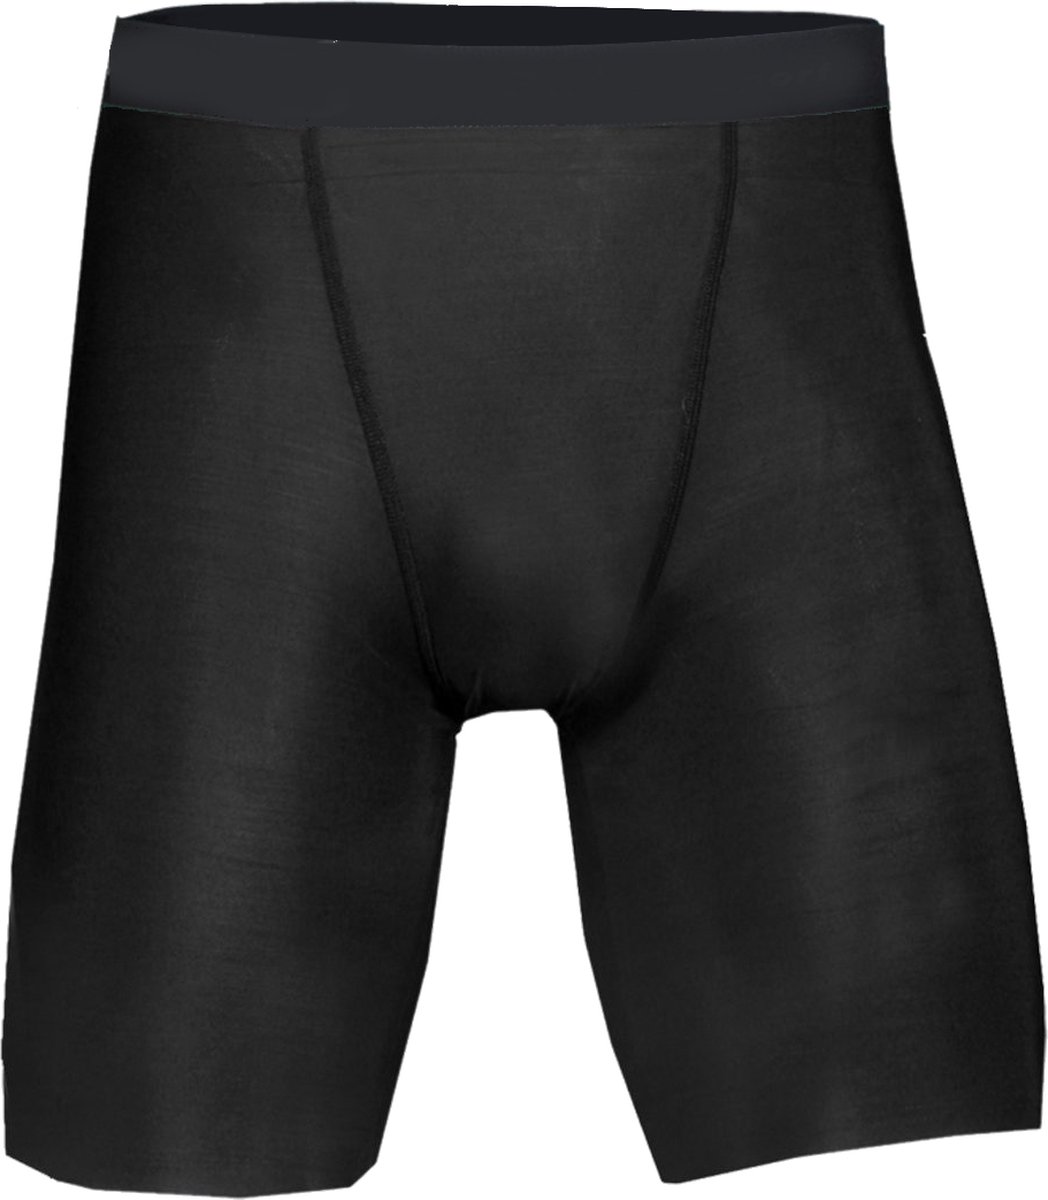 BADGER SPORT - Shorts - Pro Compression - Diverse Sporten - Volwassenen - Polyester - Heren - Zwart - Medium